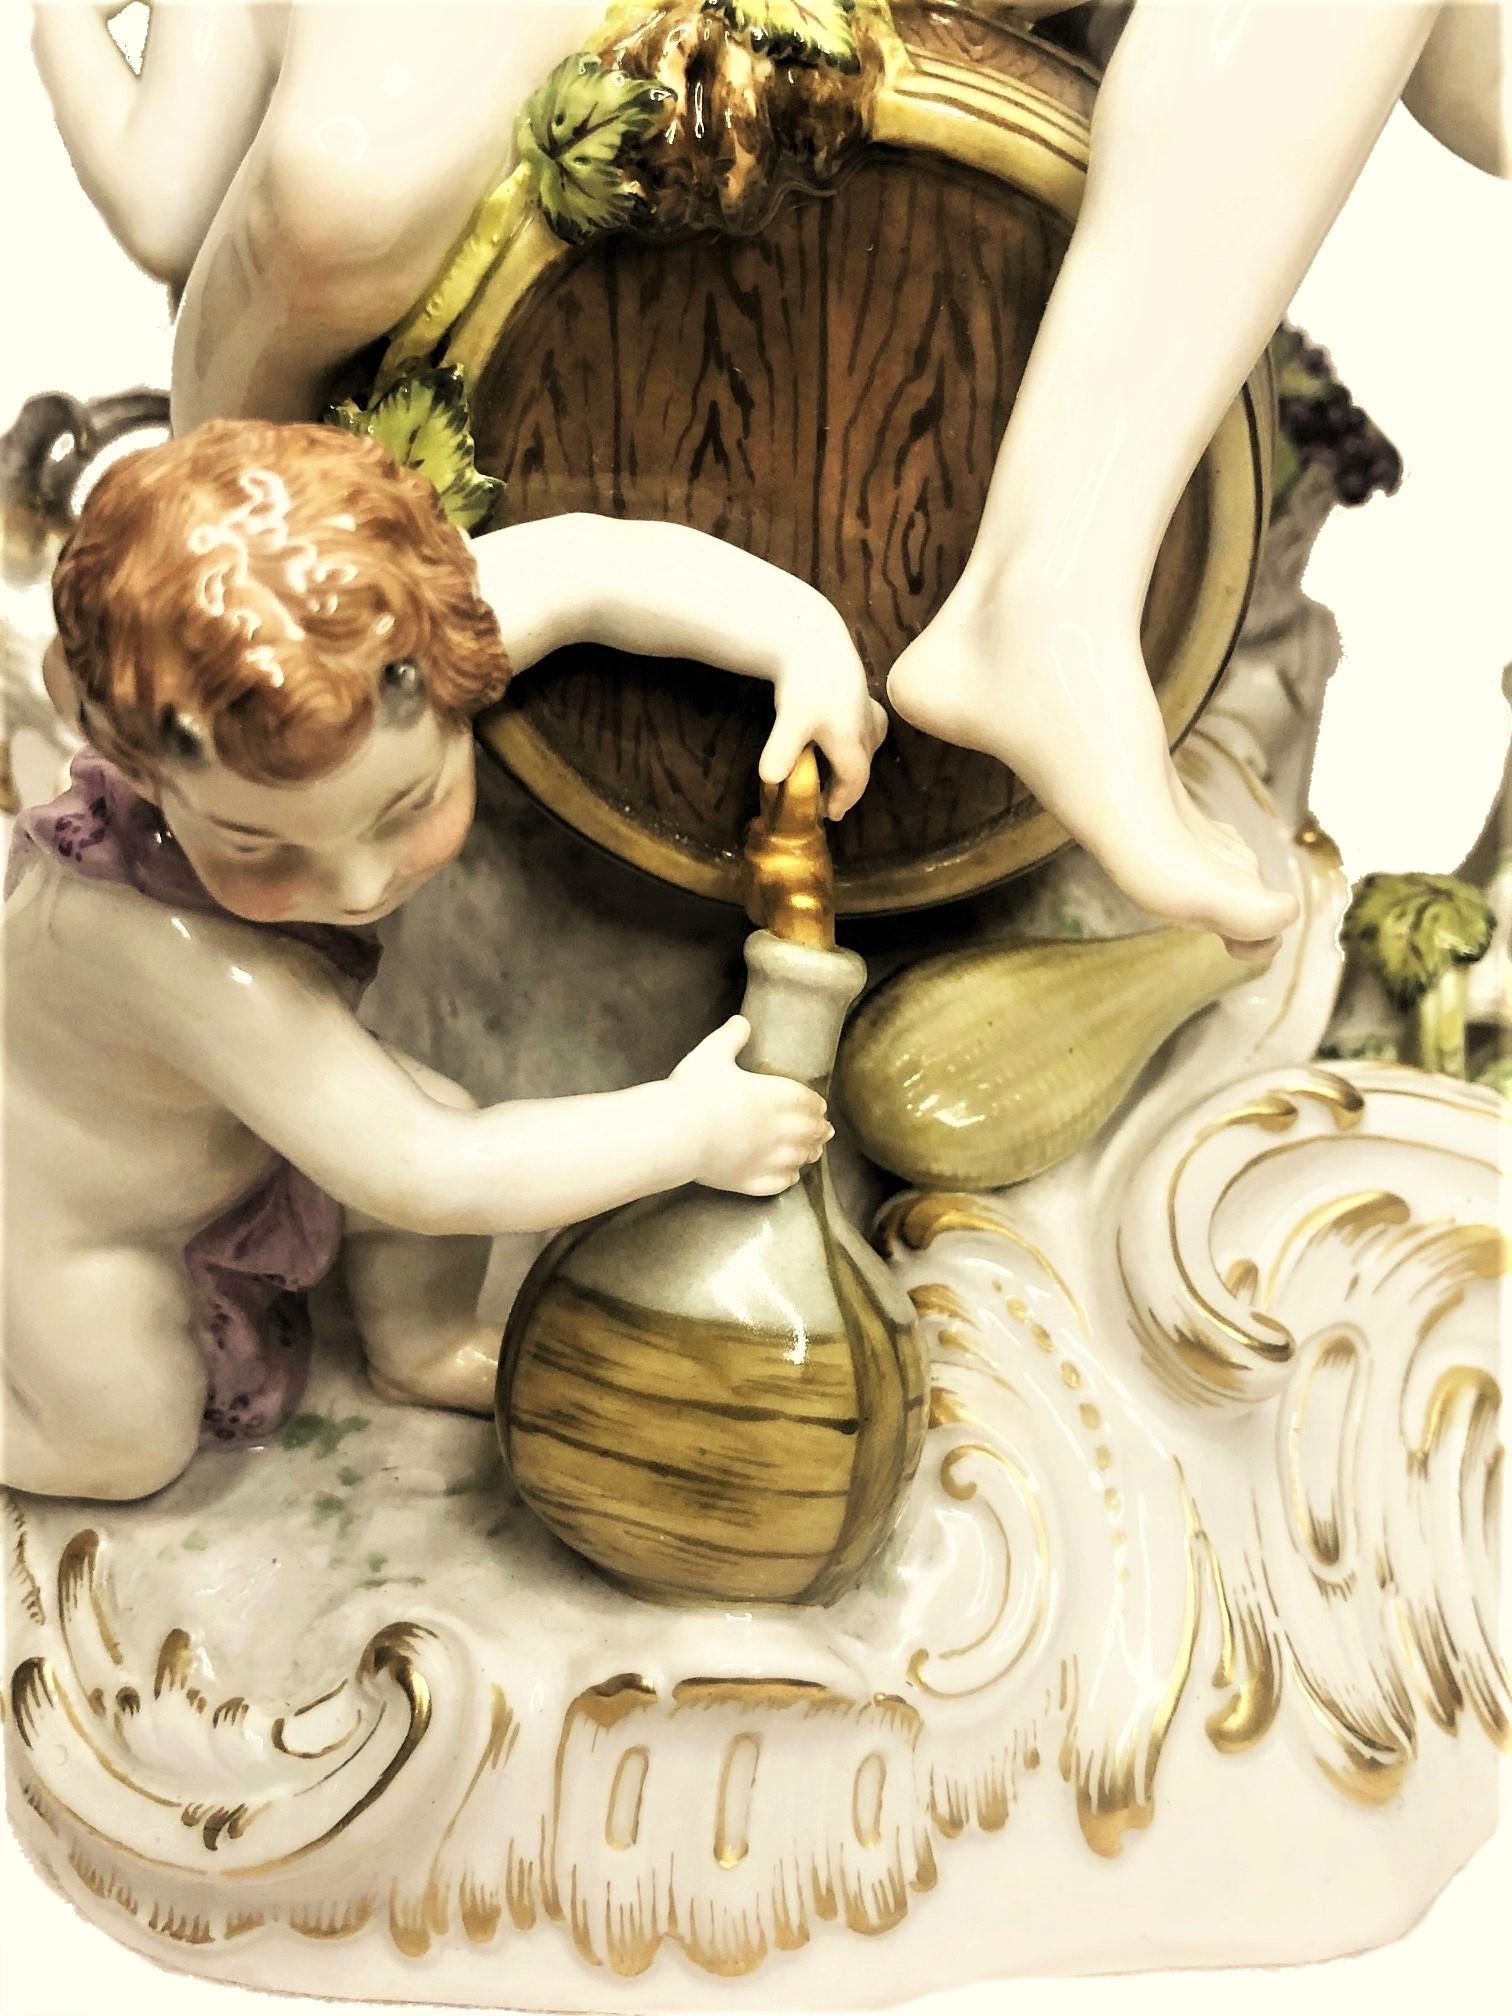 Painted Antique KPM Porcelain Group of Bacchus and Aphrodite’ Feast, XIX Century For Sale